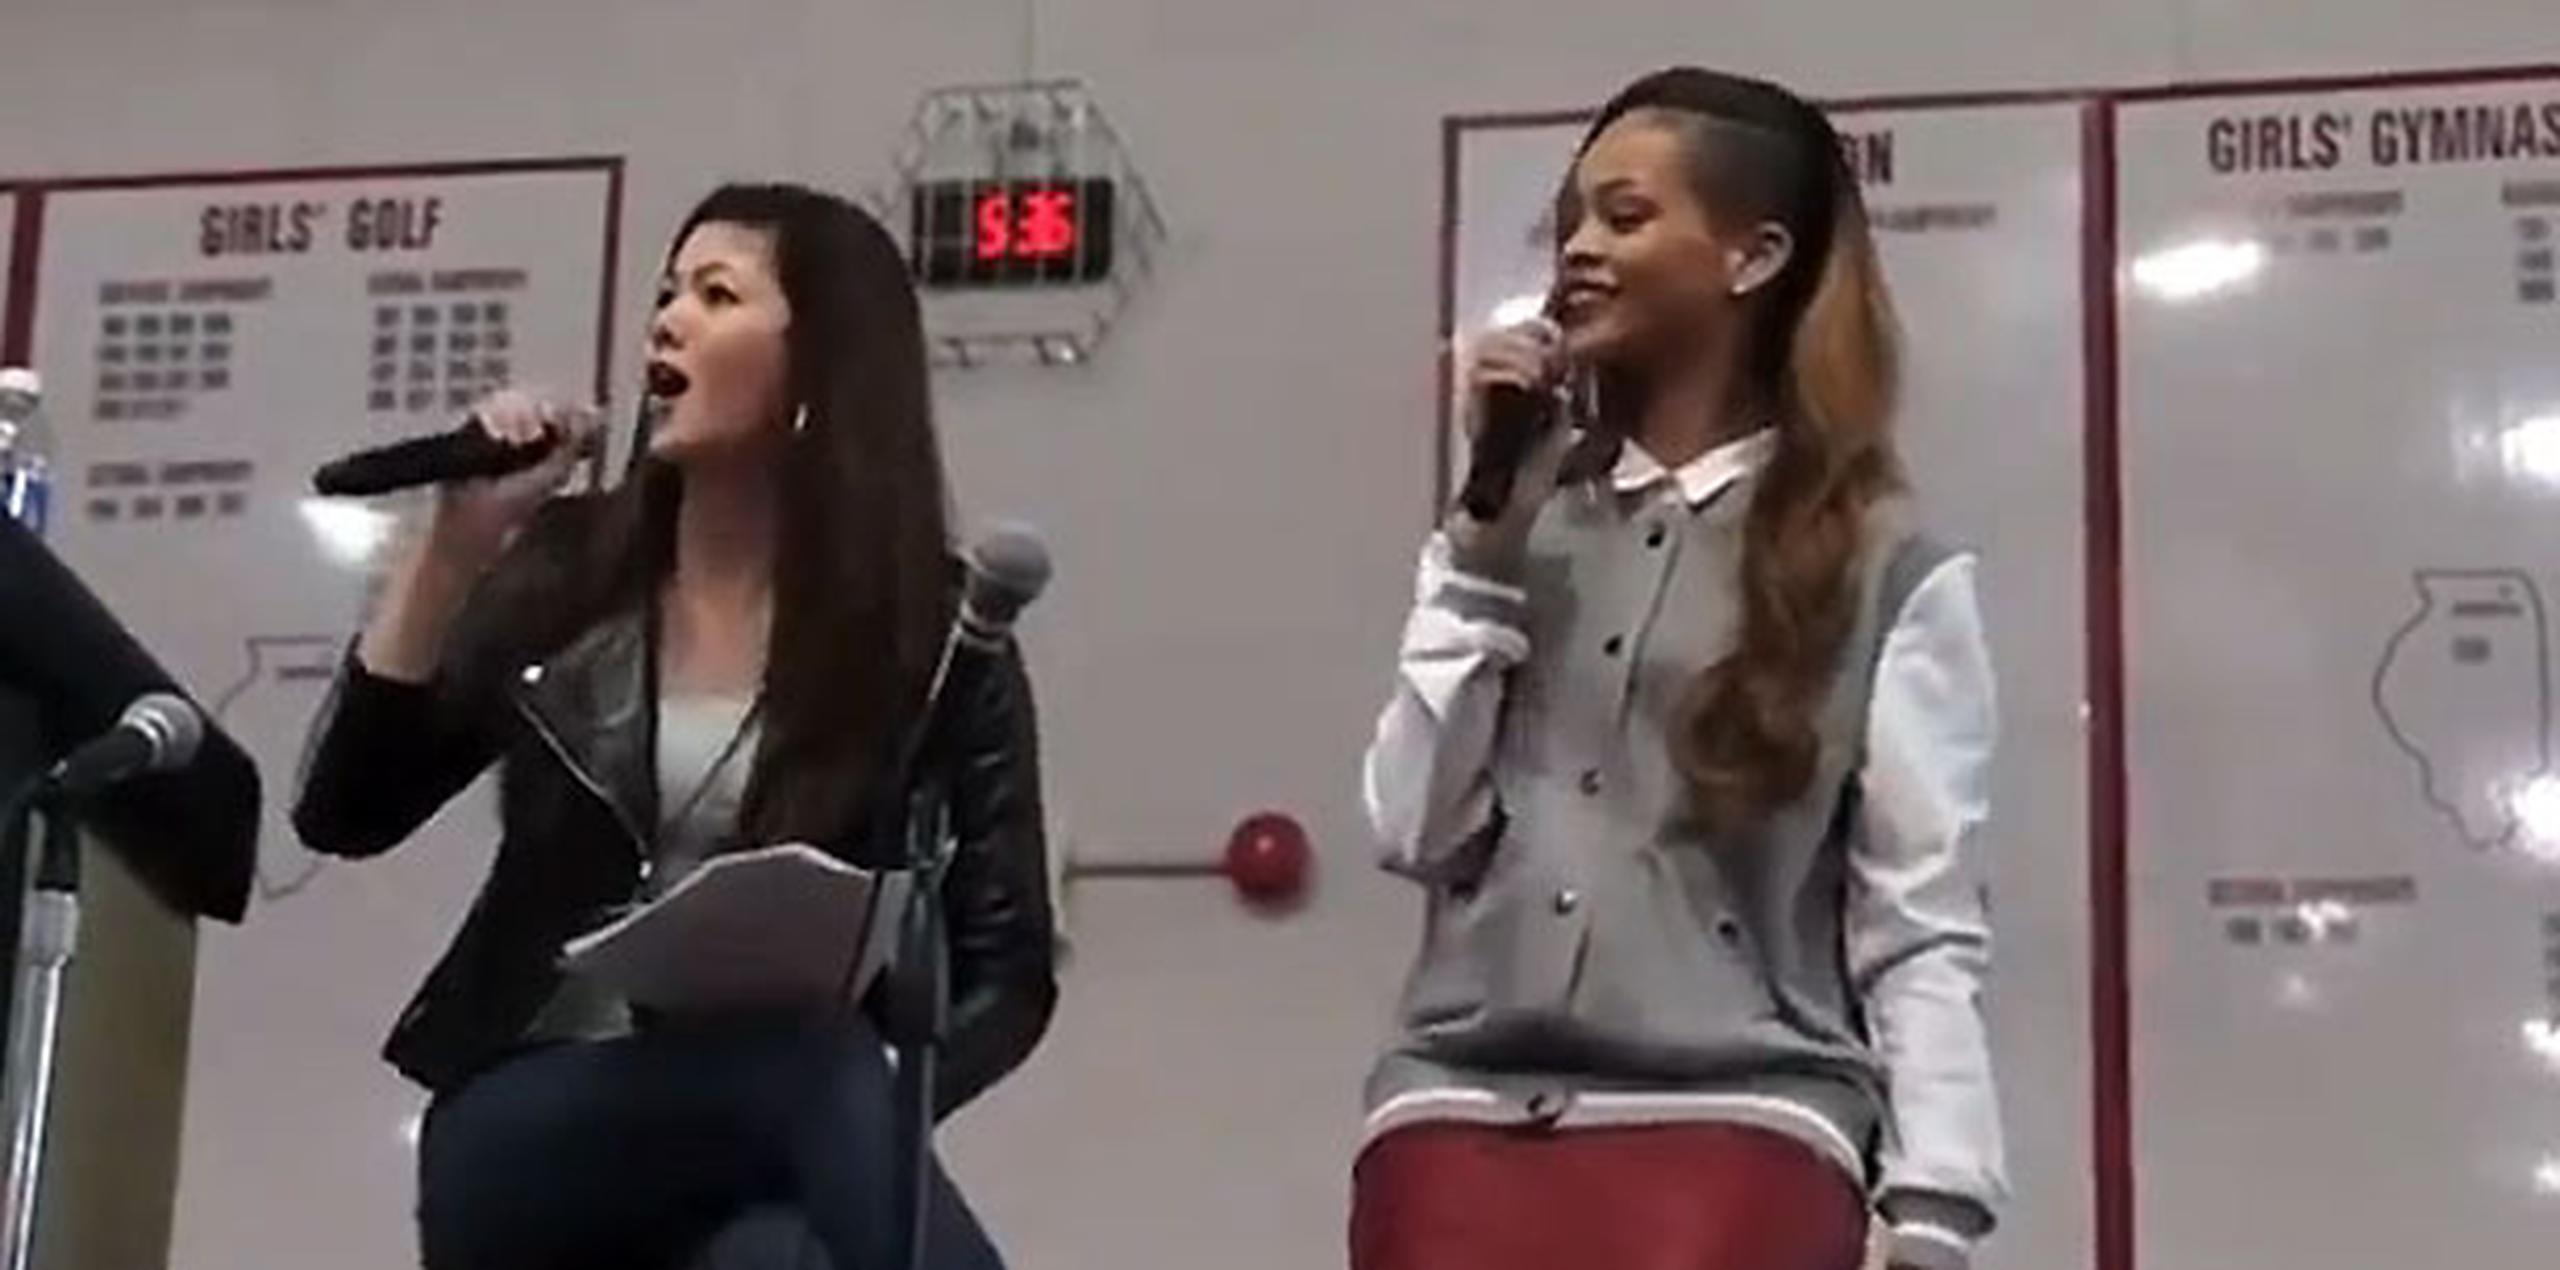 La cantante dijo a los estudiantes que admiraba su pasión y voluntariado. (YouTube)